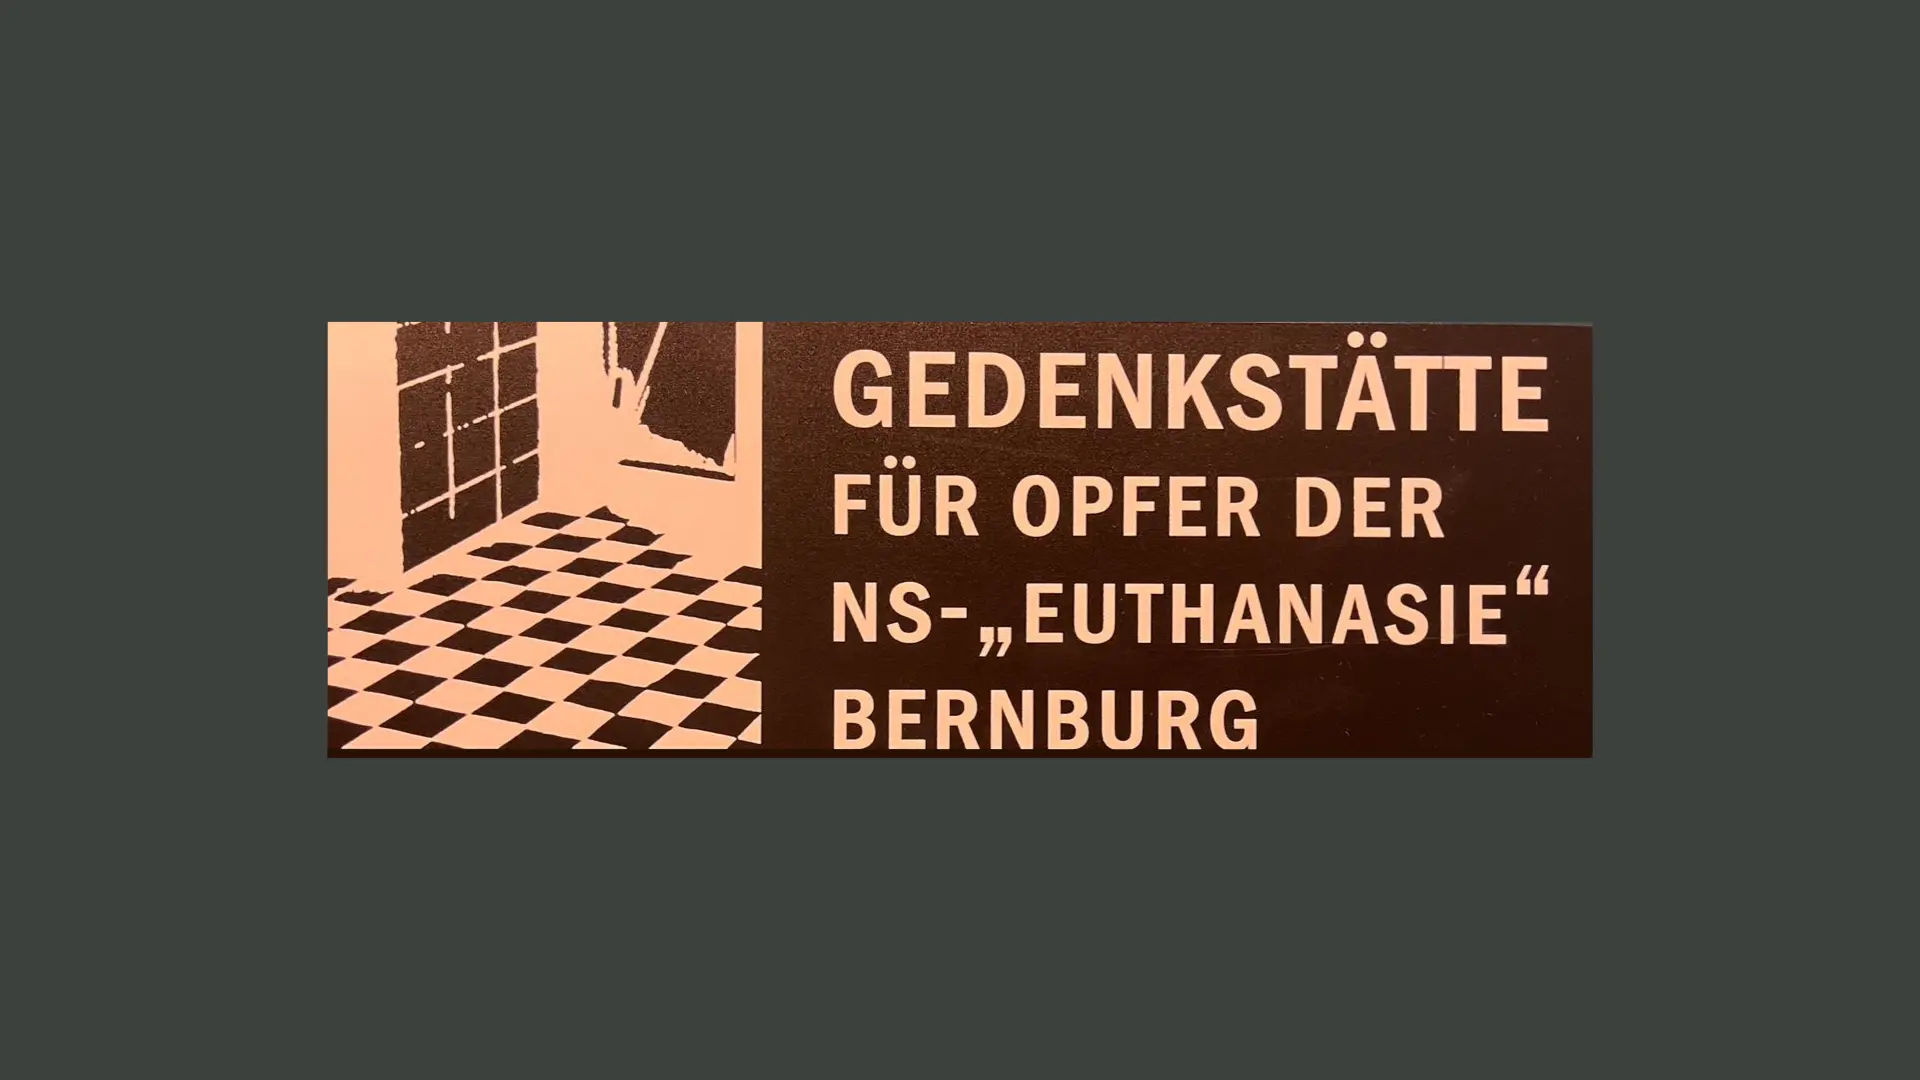 Exkursion zur Gedenkstätte für Opfer der „NS-Euthanasie“ Bernburg